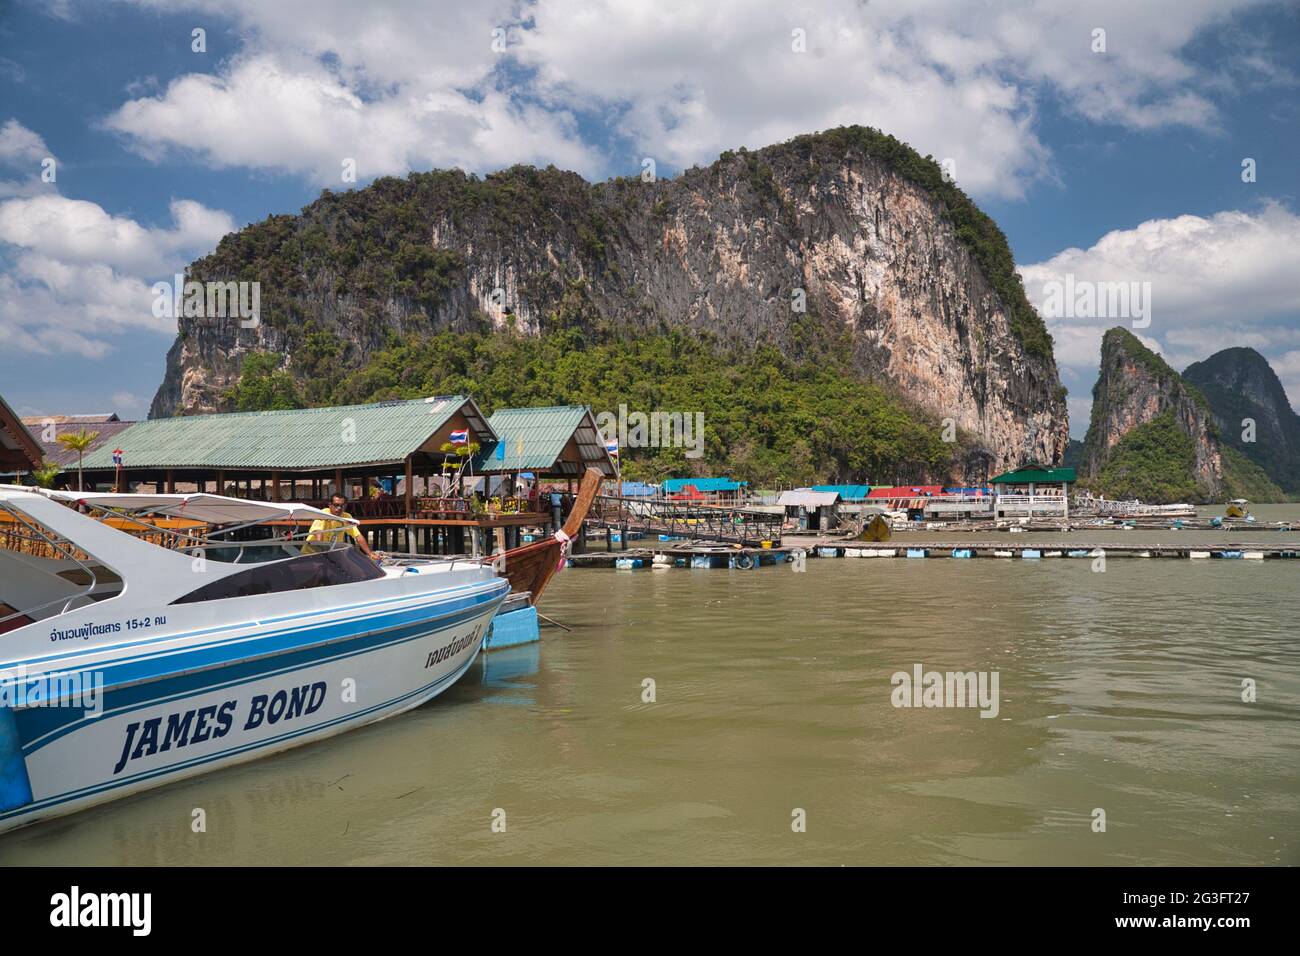 Un bateau à moteur moderne amarré dans un village aquatique construit sur pilotis à Phang Nga, en Thaïlande, avec d'énormes rochers et falaises en arrière-plan Banque D'Images